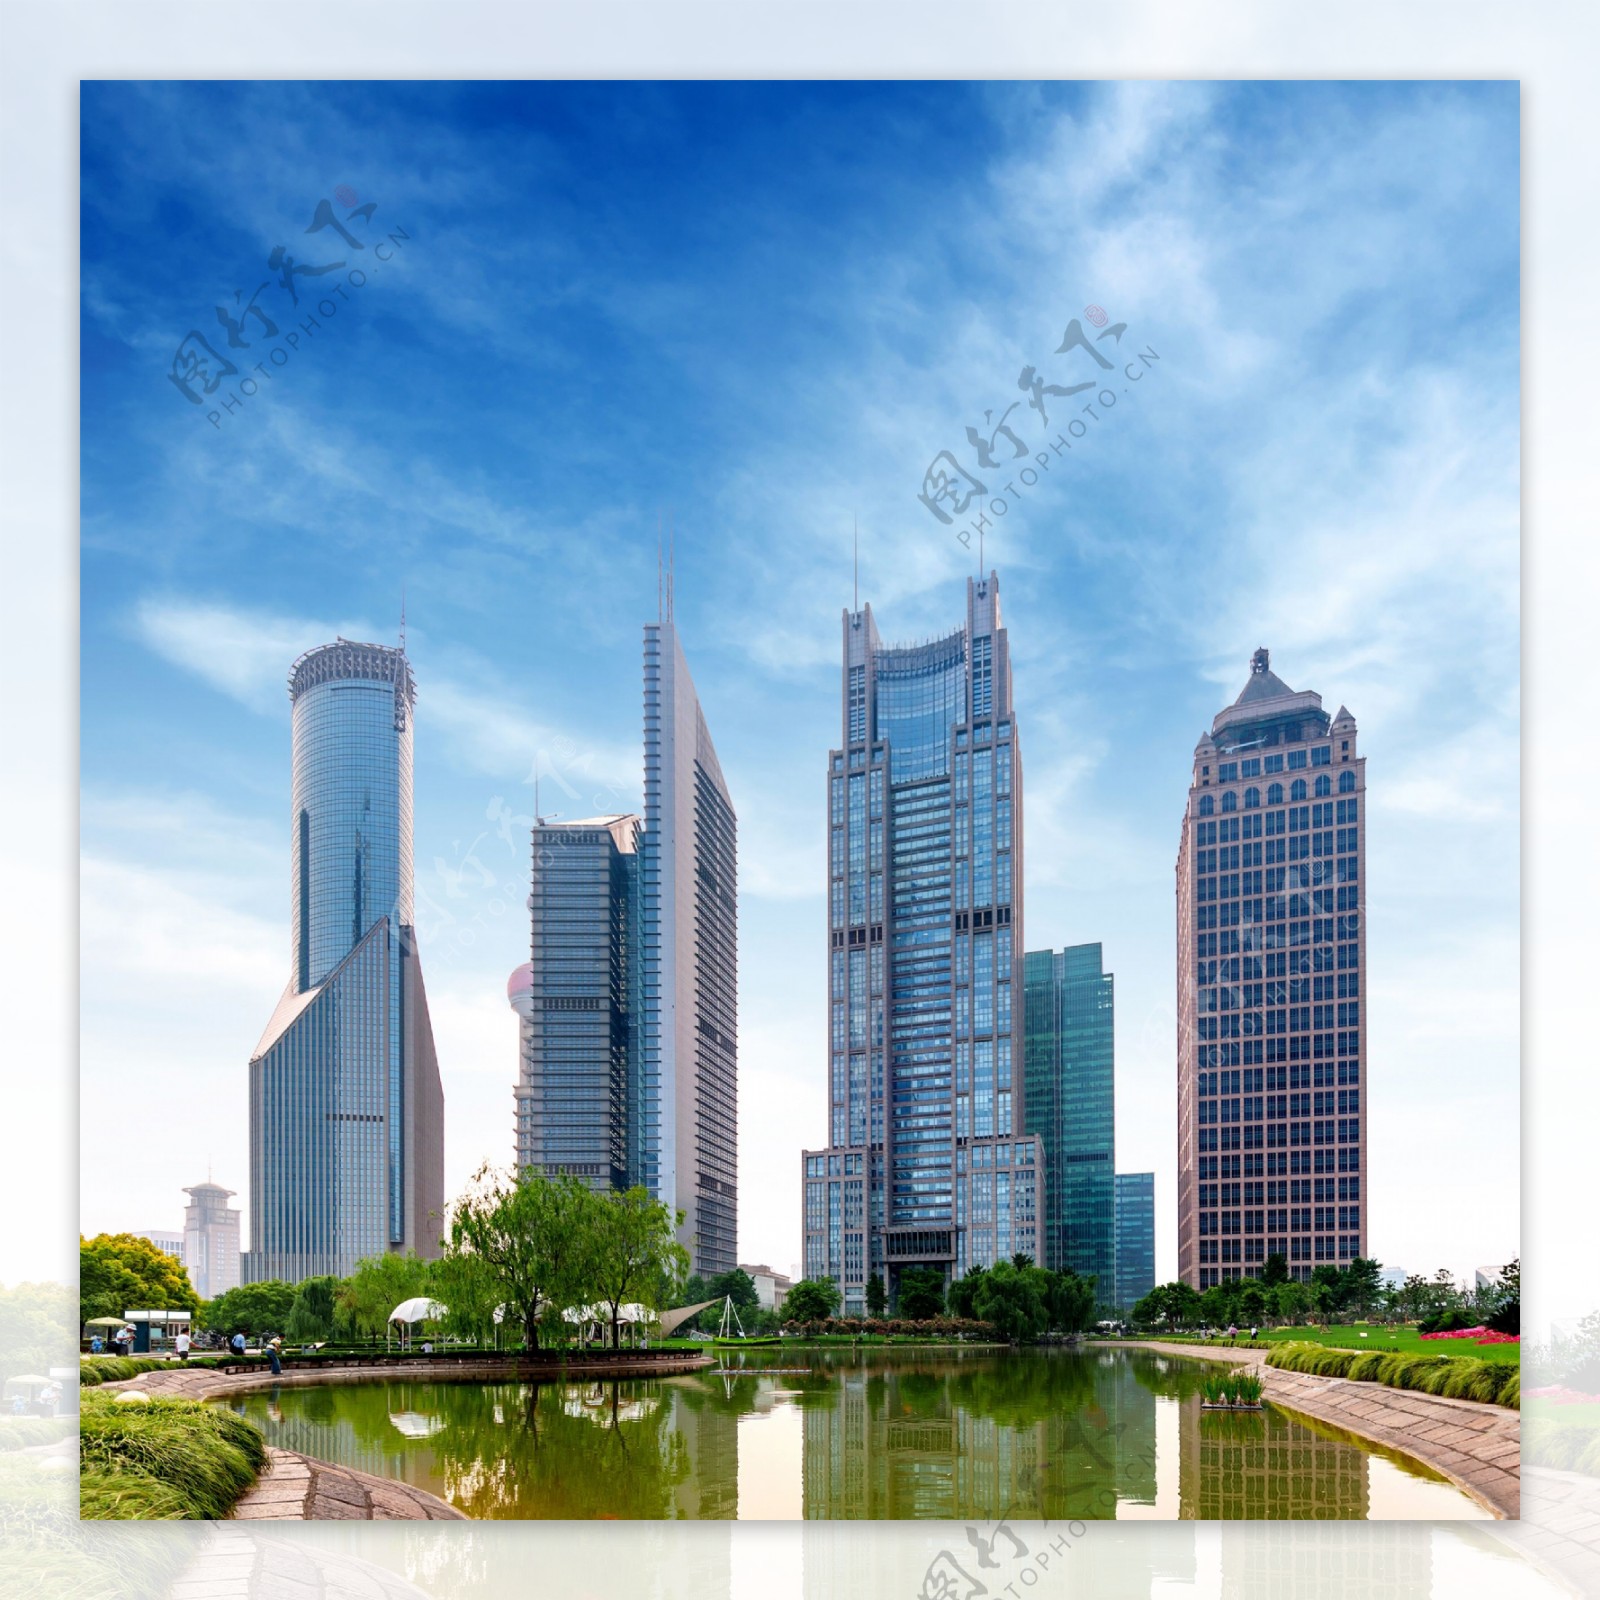 上海陆家嘴中央商务区风景图片